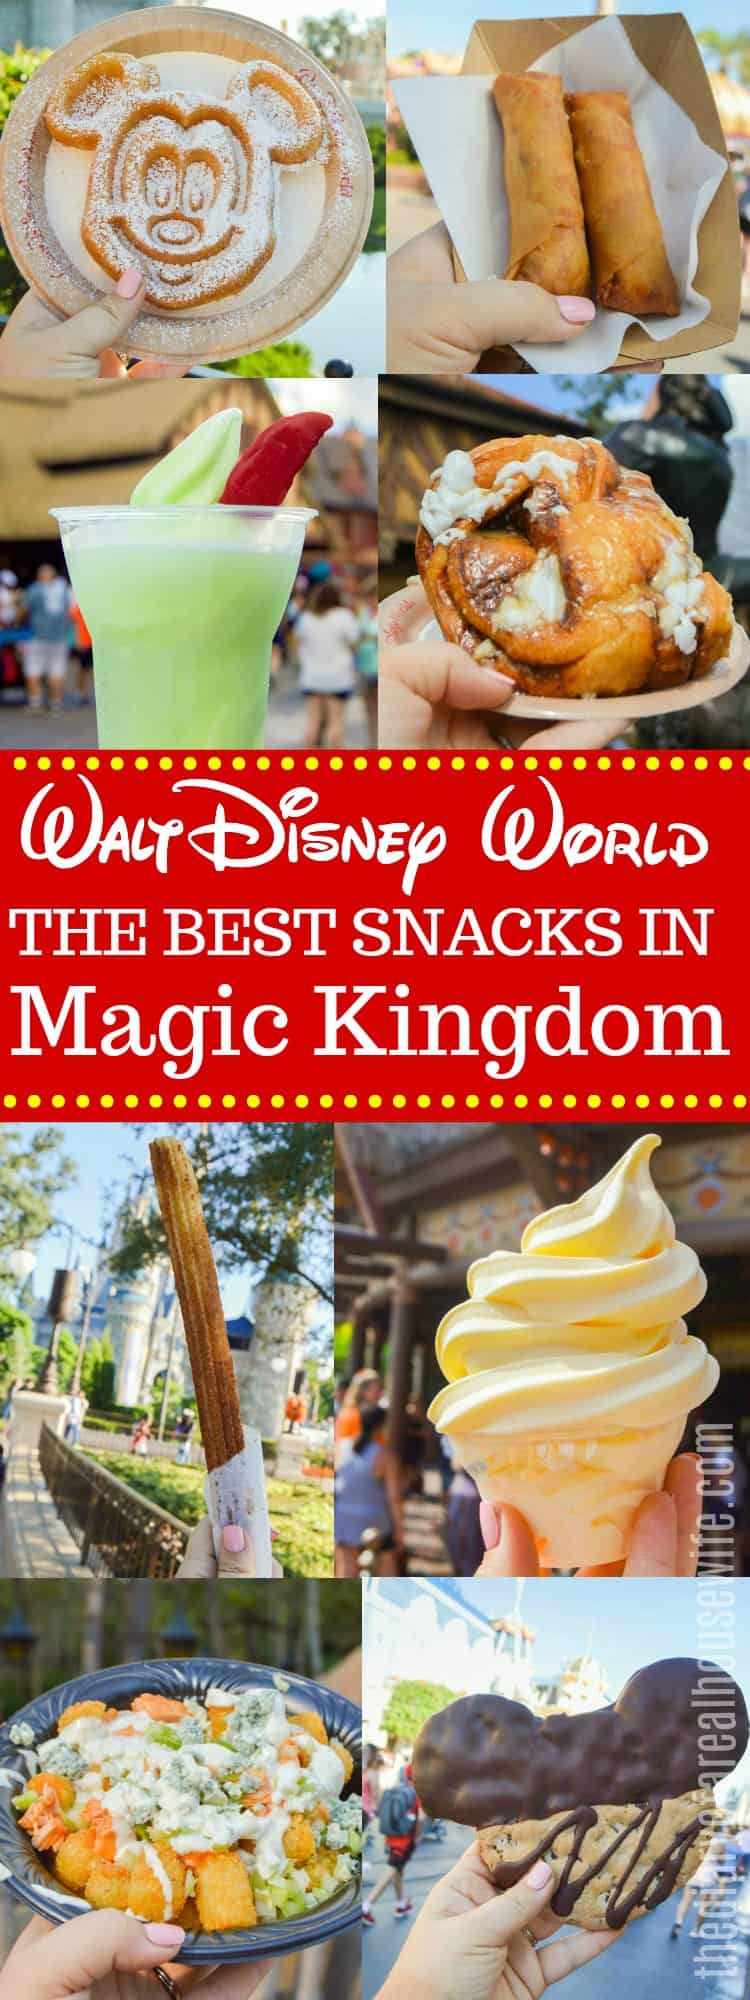 The Best Snacks in Magic Kingdom